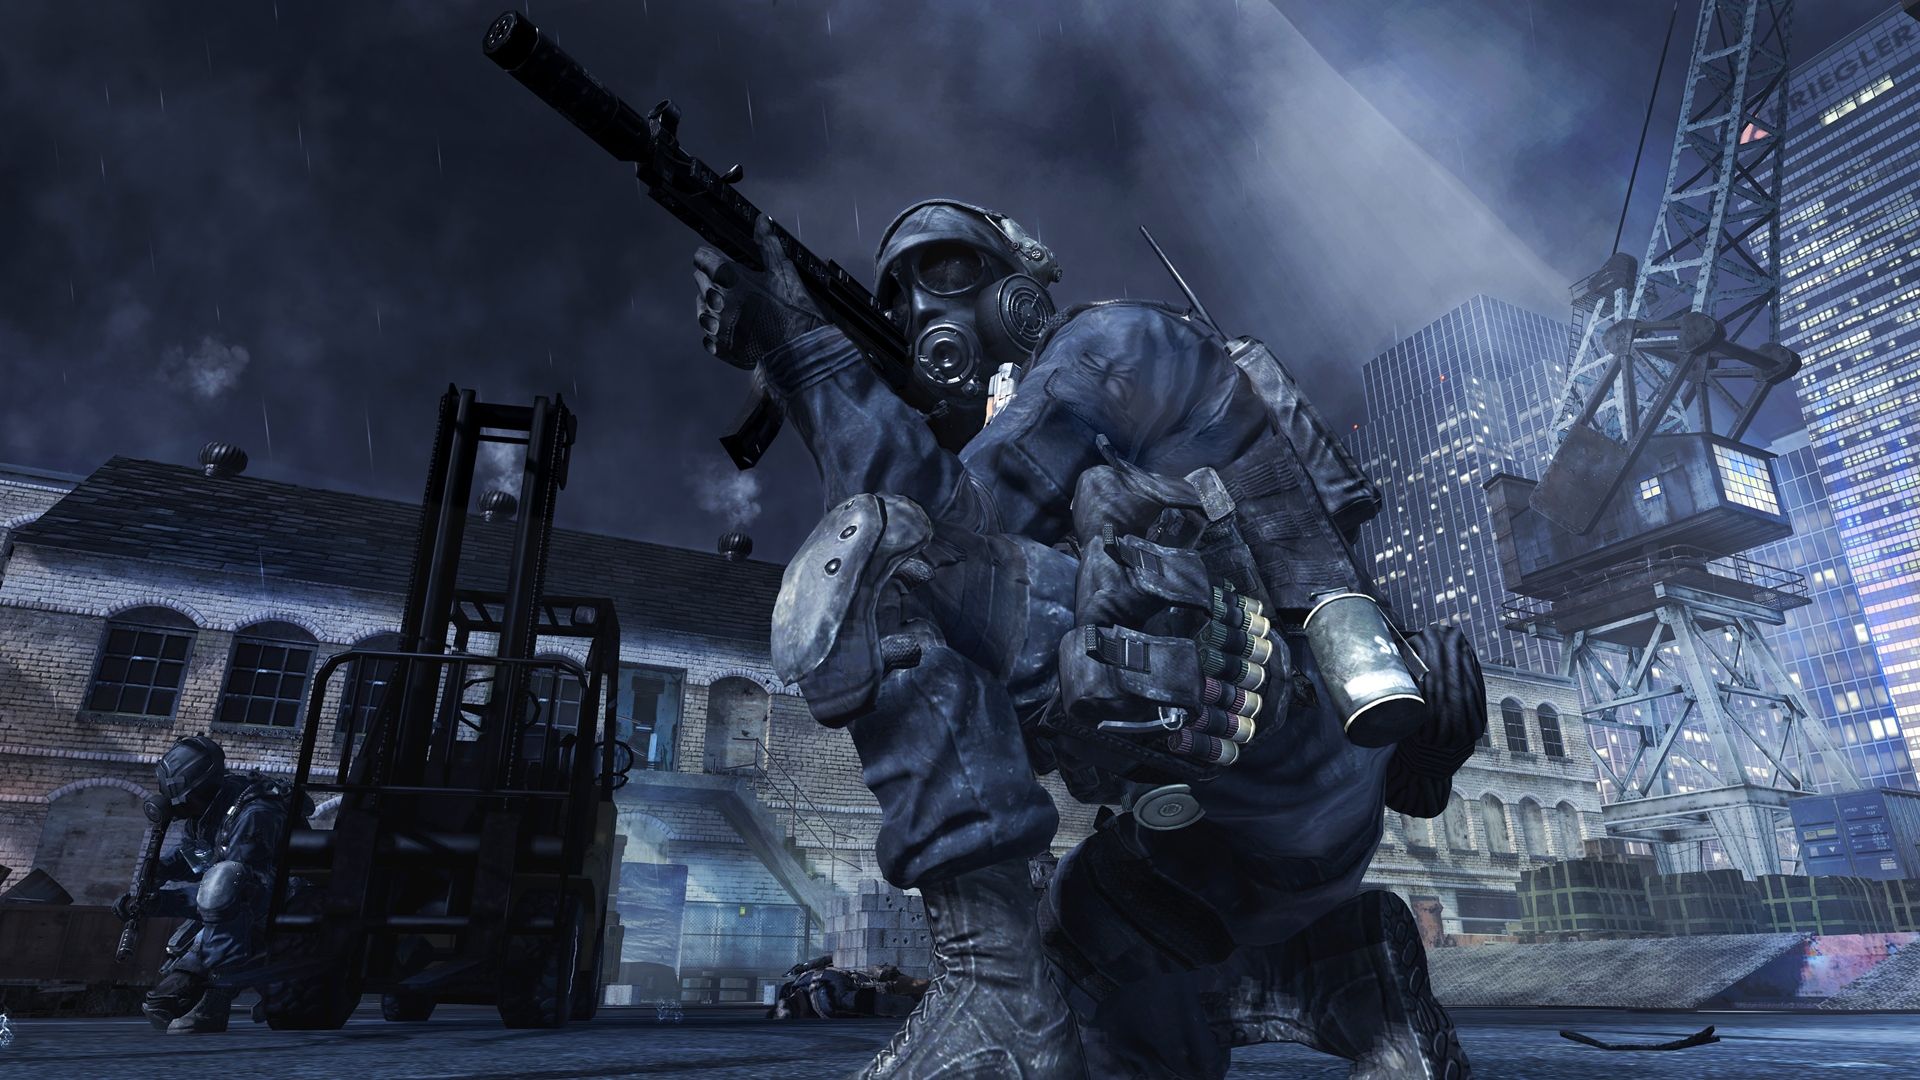 Call of Duty: Modern Warfare 3 (Steam key) RU CIS